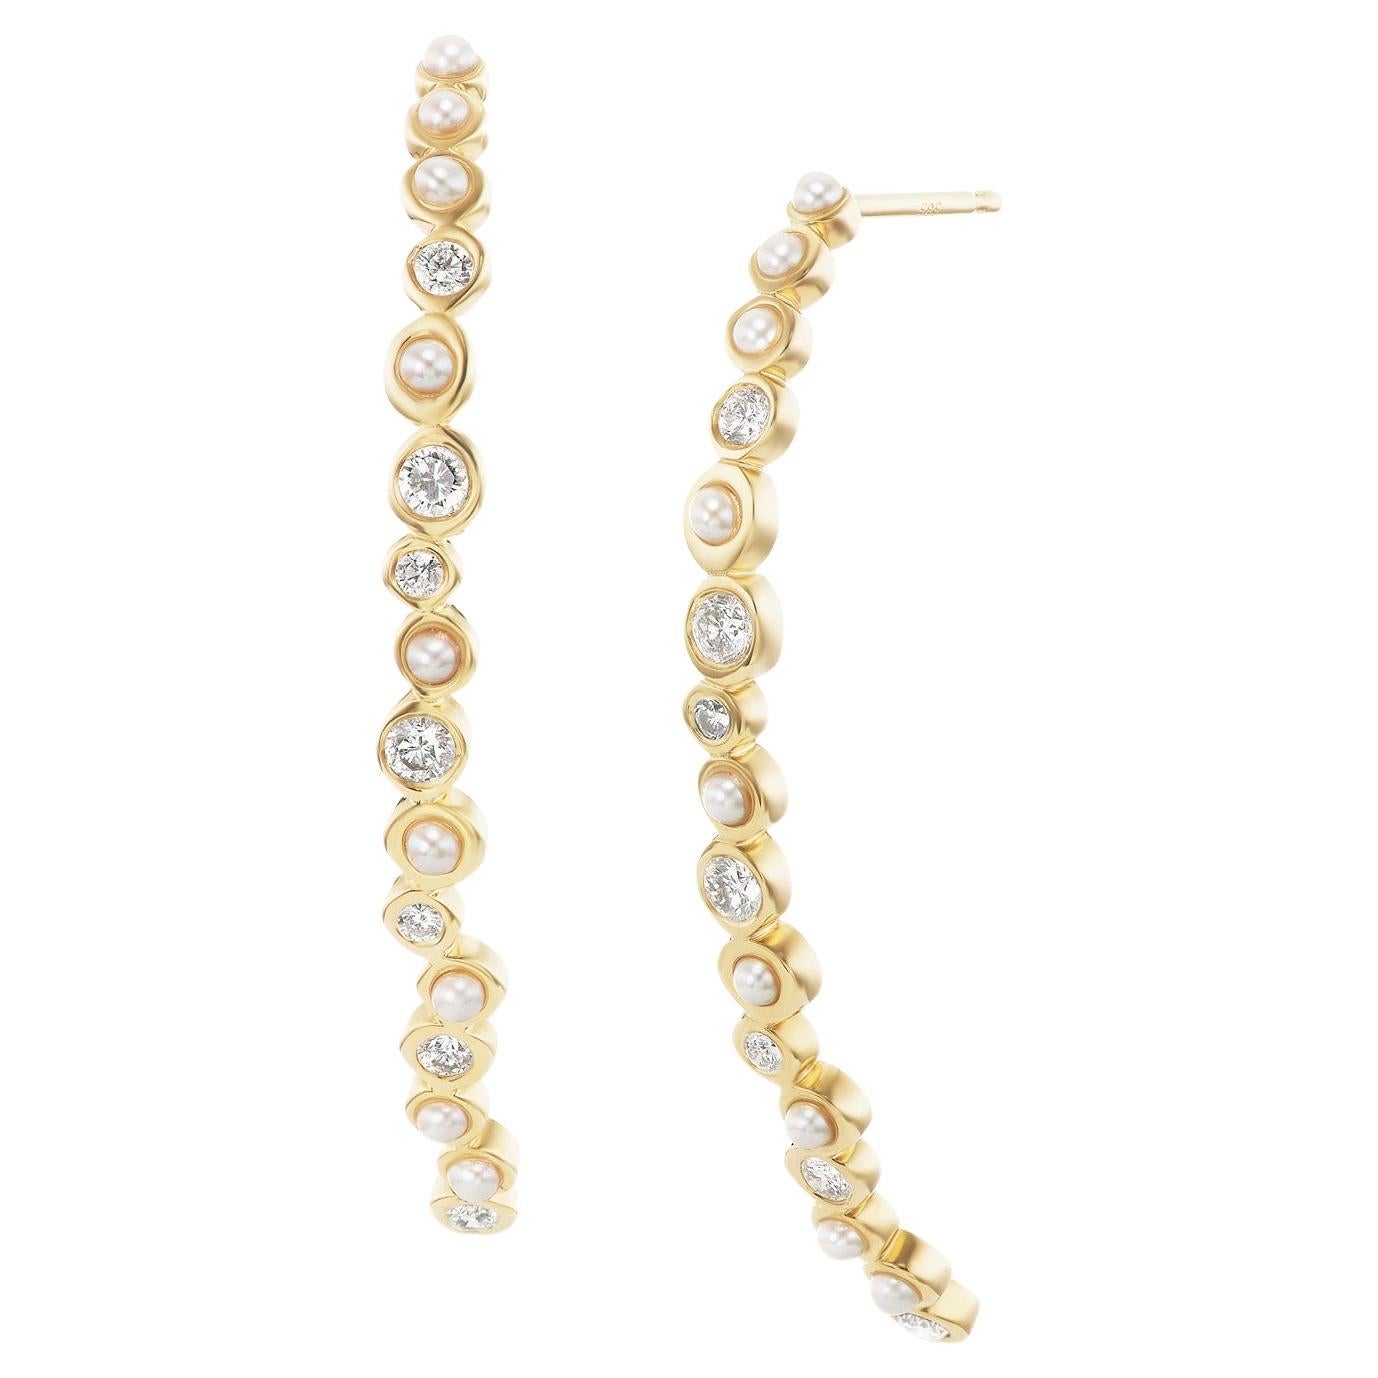 Boucles d'oreilles linéaires en or jaune 14 carats avec perles et diamants Hi June Parker